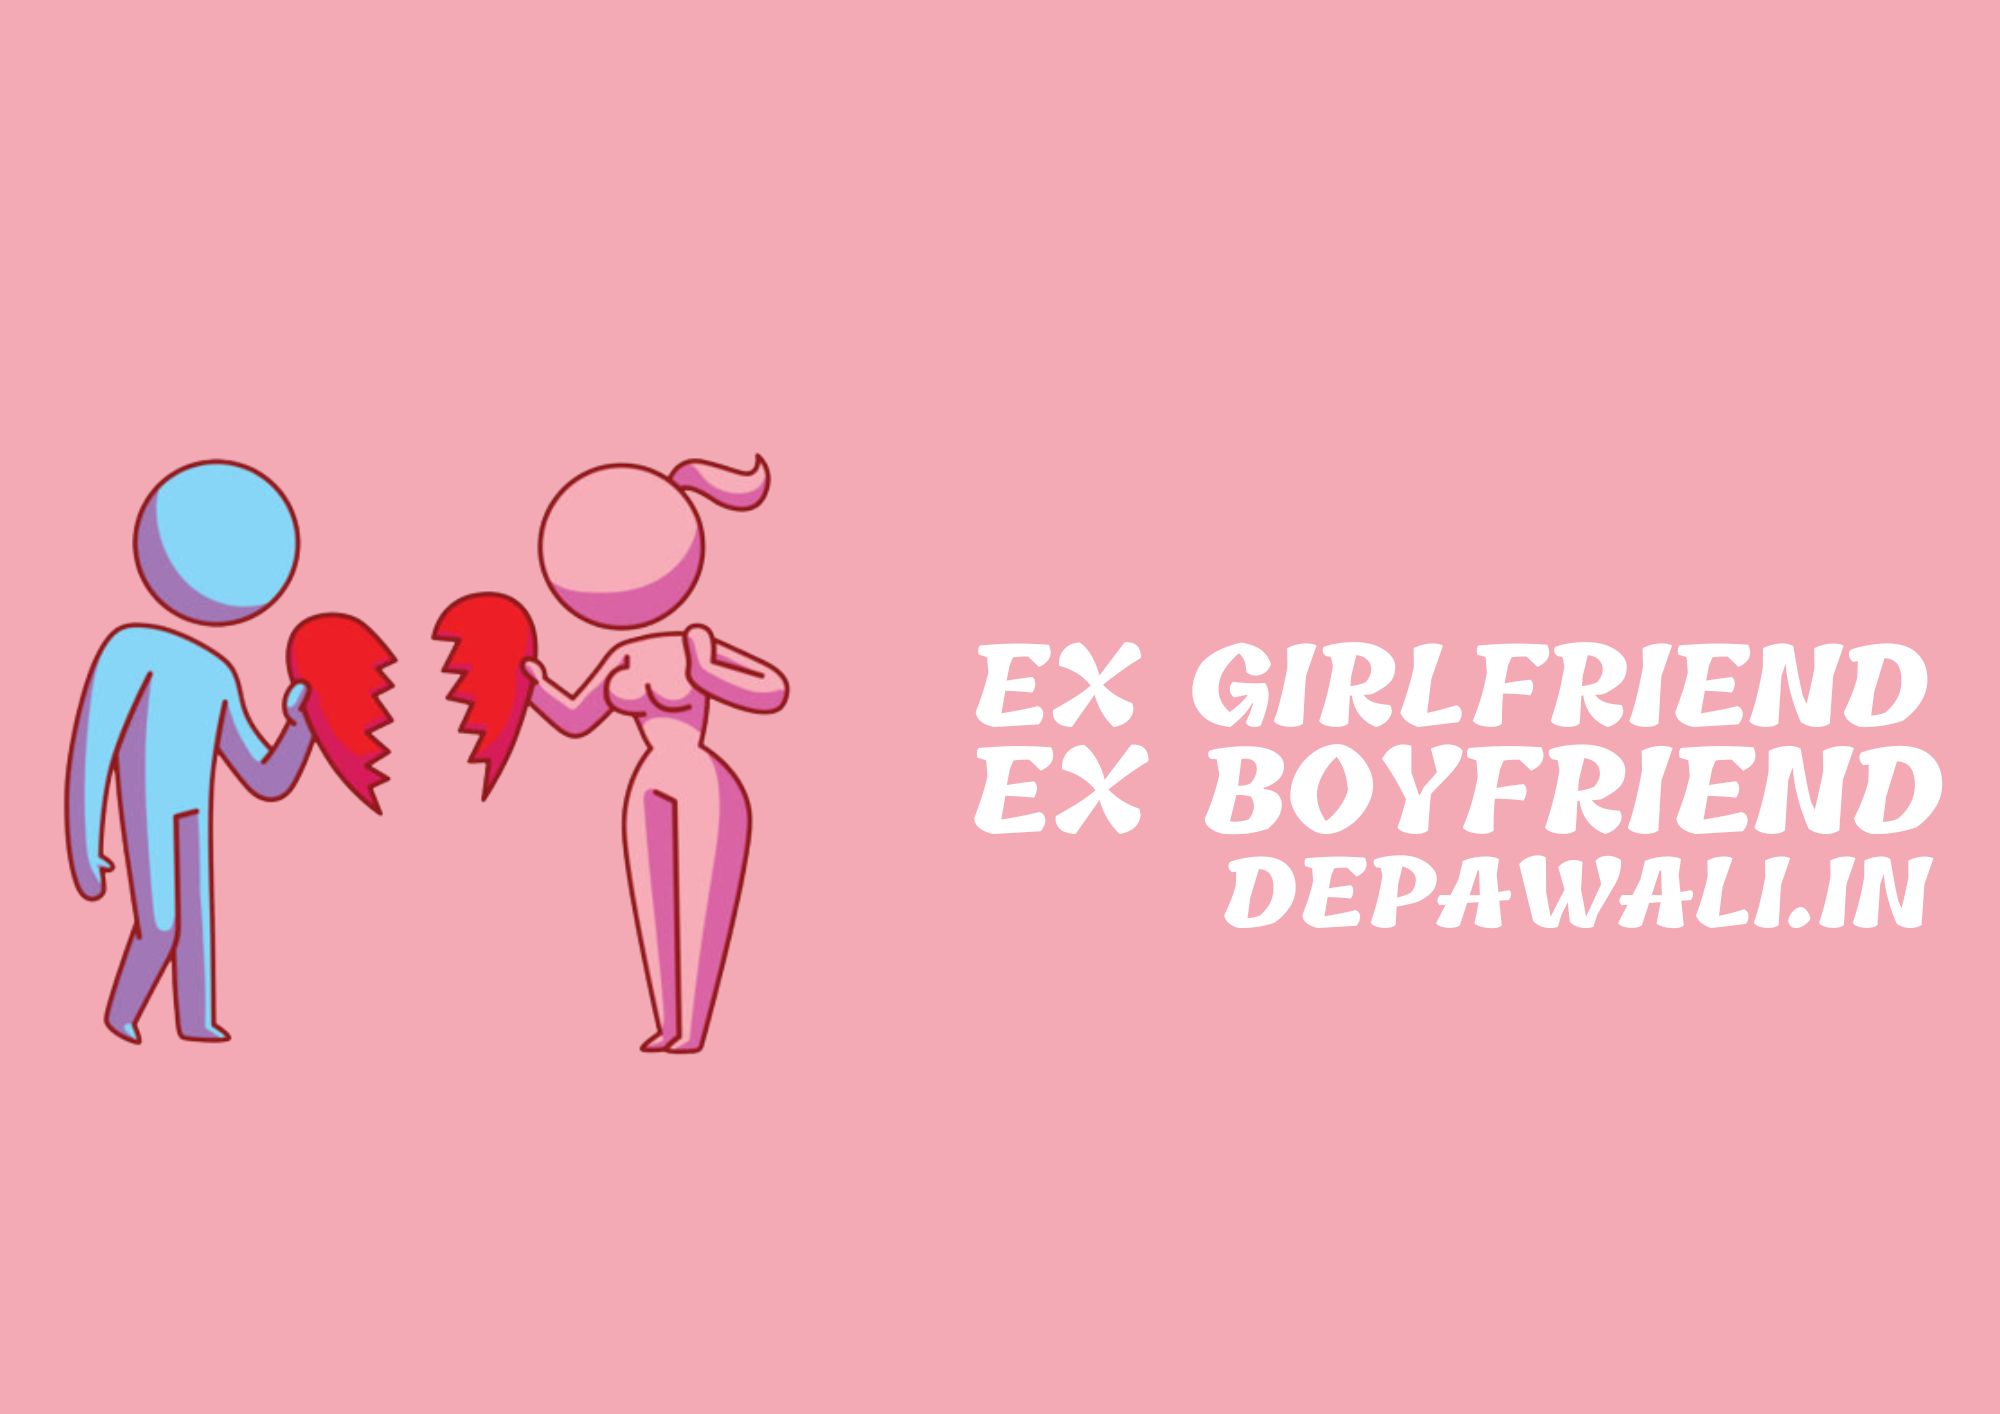 एक्स गर्लफ्रेंड और एक्स बॉयफ्रेंड का मतलब क्या होता है (EX Girlfriend And EX Boyfriend Meaning In Hindi) - EX Girlfriend Meaning In Hindi - EX Boyfriend Meaning In Hindi